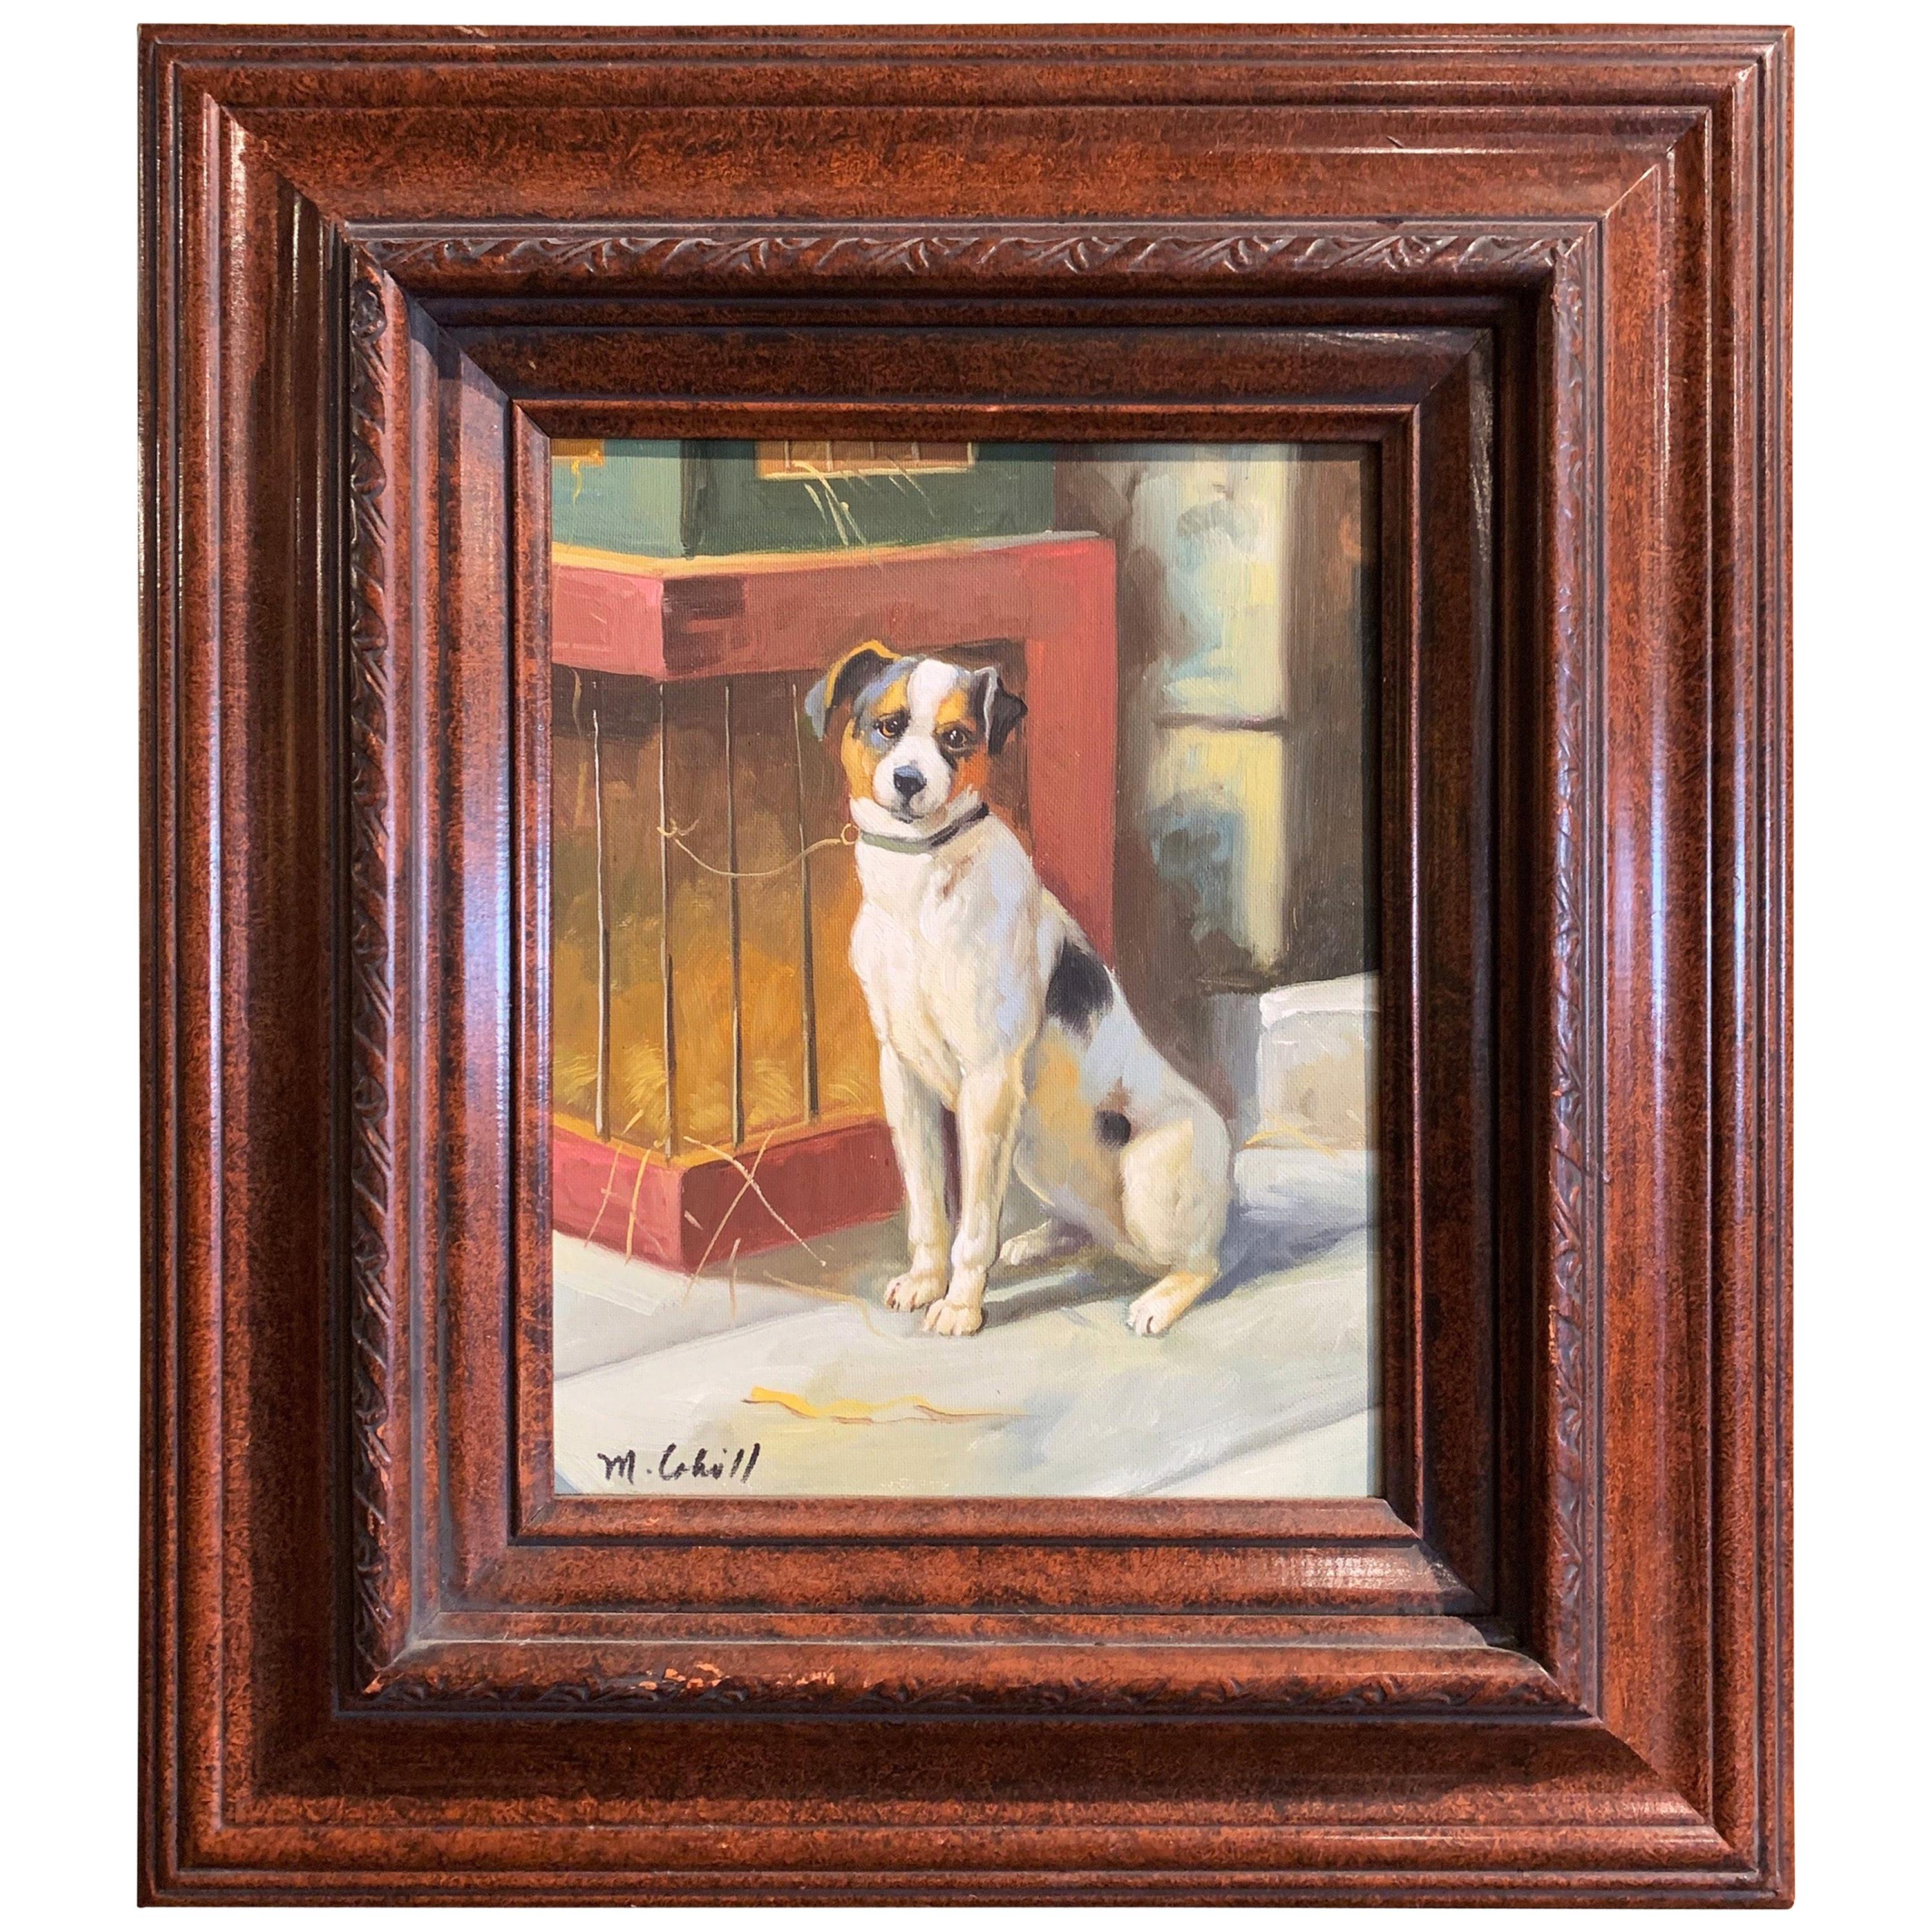 Vieille peinture à l'huile sur toile - Terrier dans un cadre sculpté signé M. Cahill